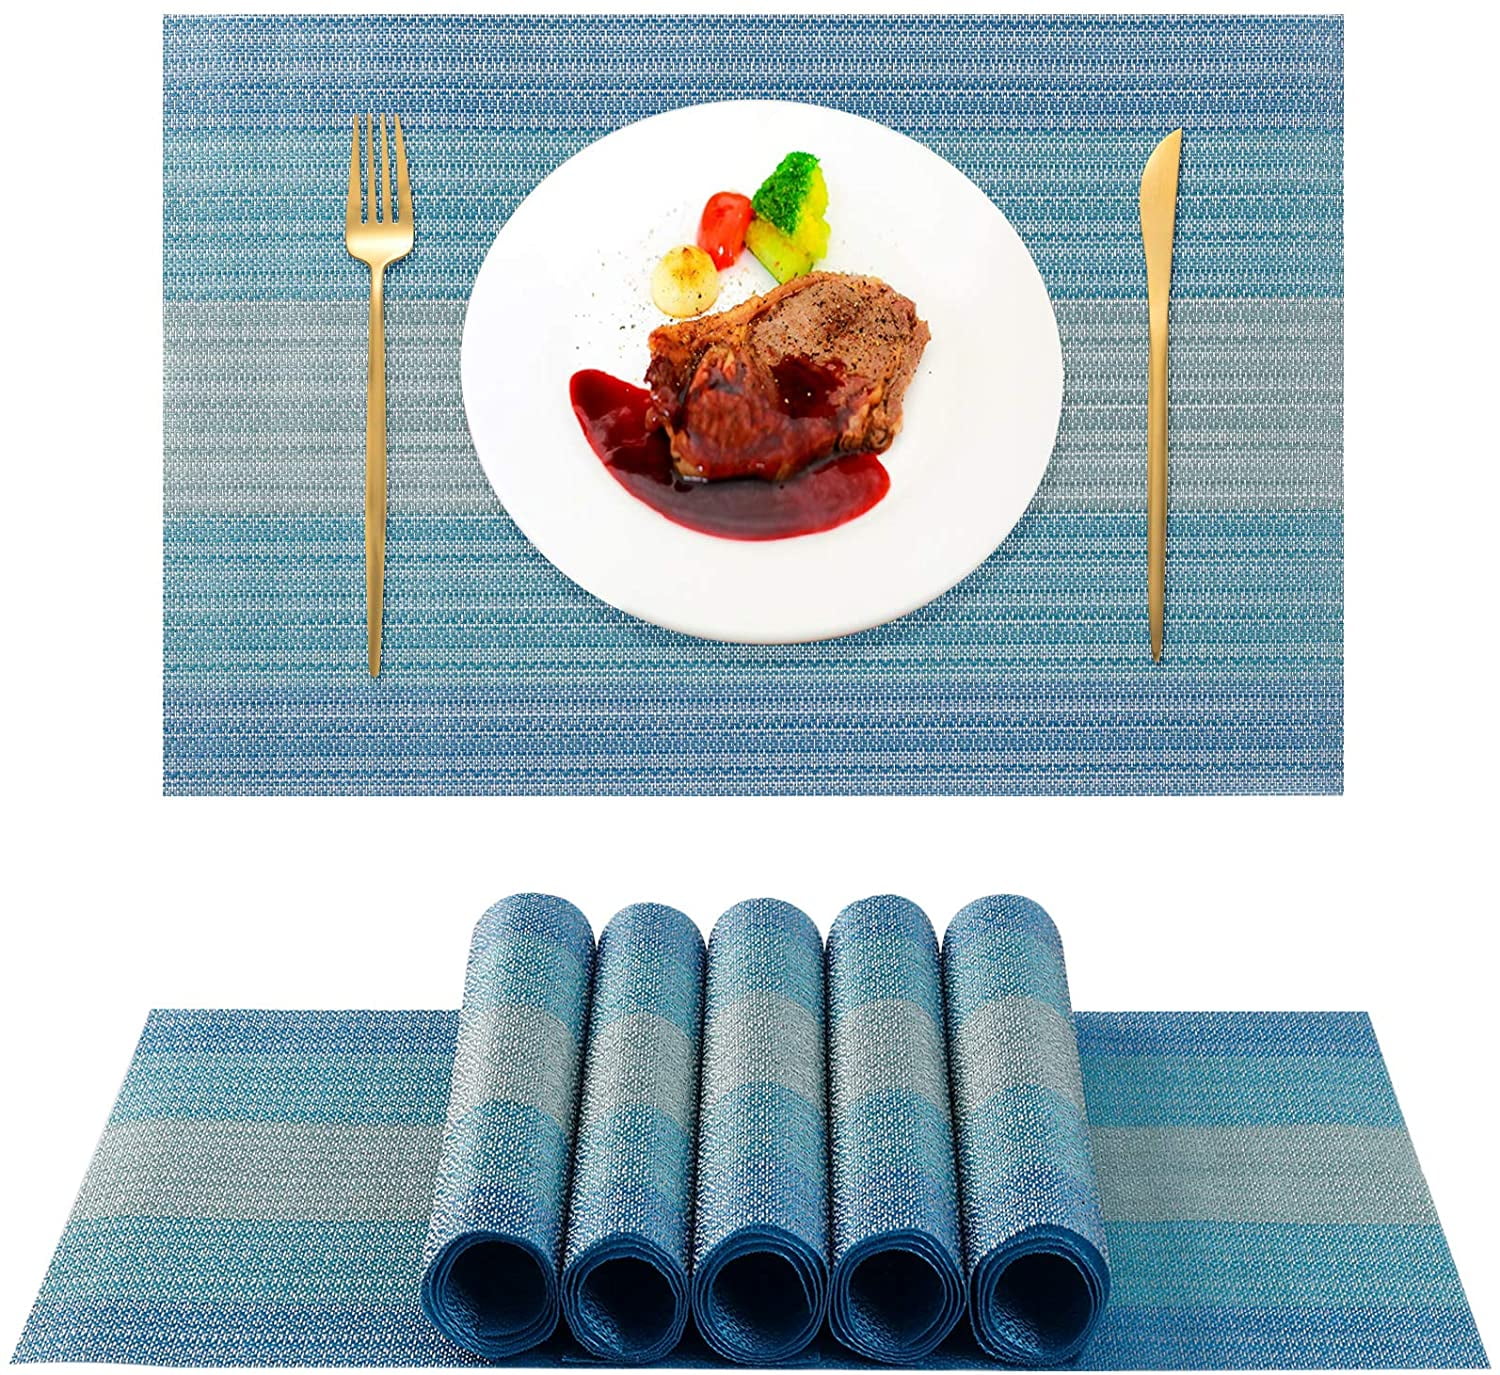 Placemats PVC Set of 6 Heat Resistant Washable DiningTable Mat Woven Blue Stripe